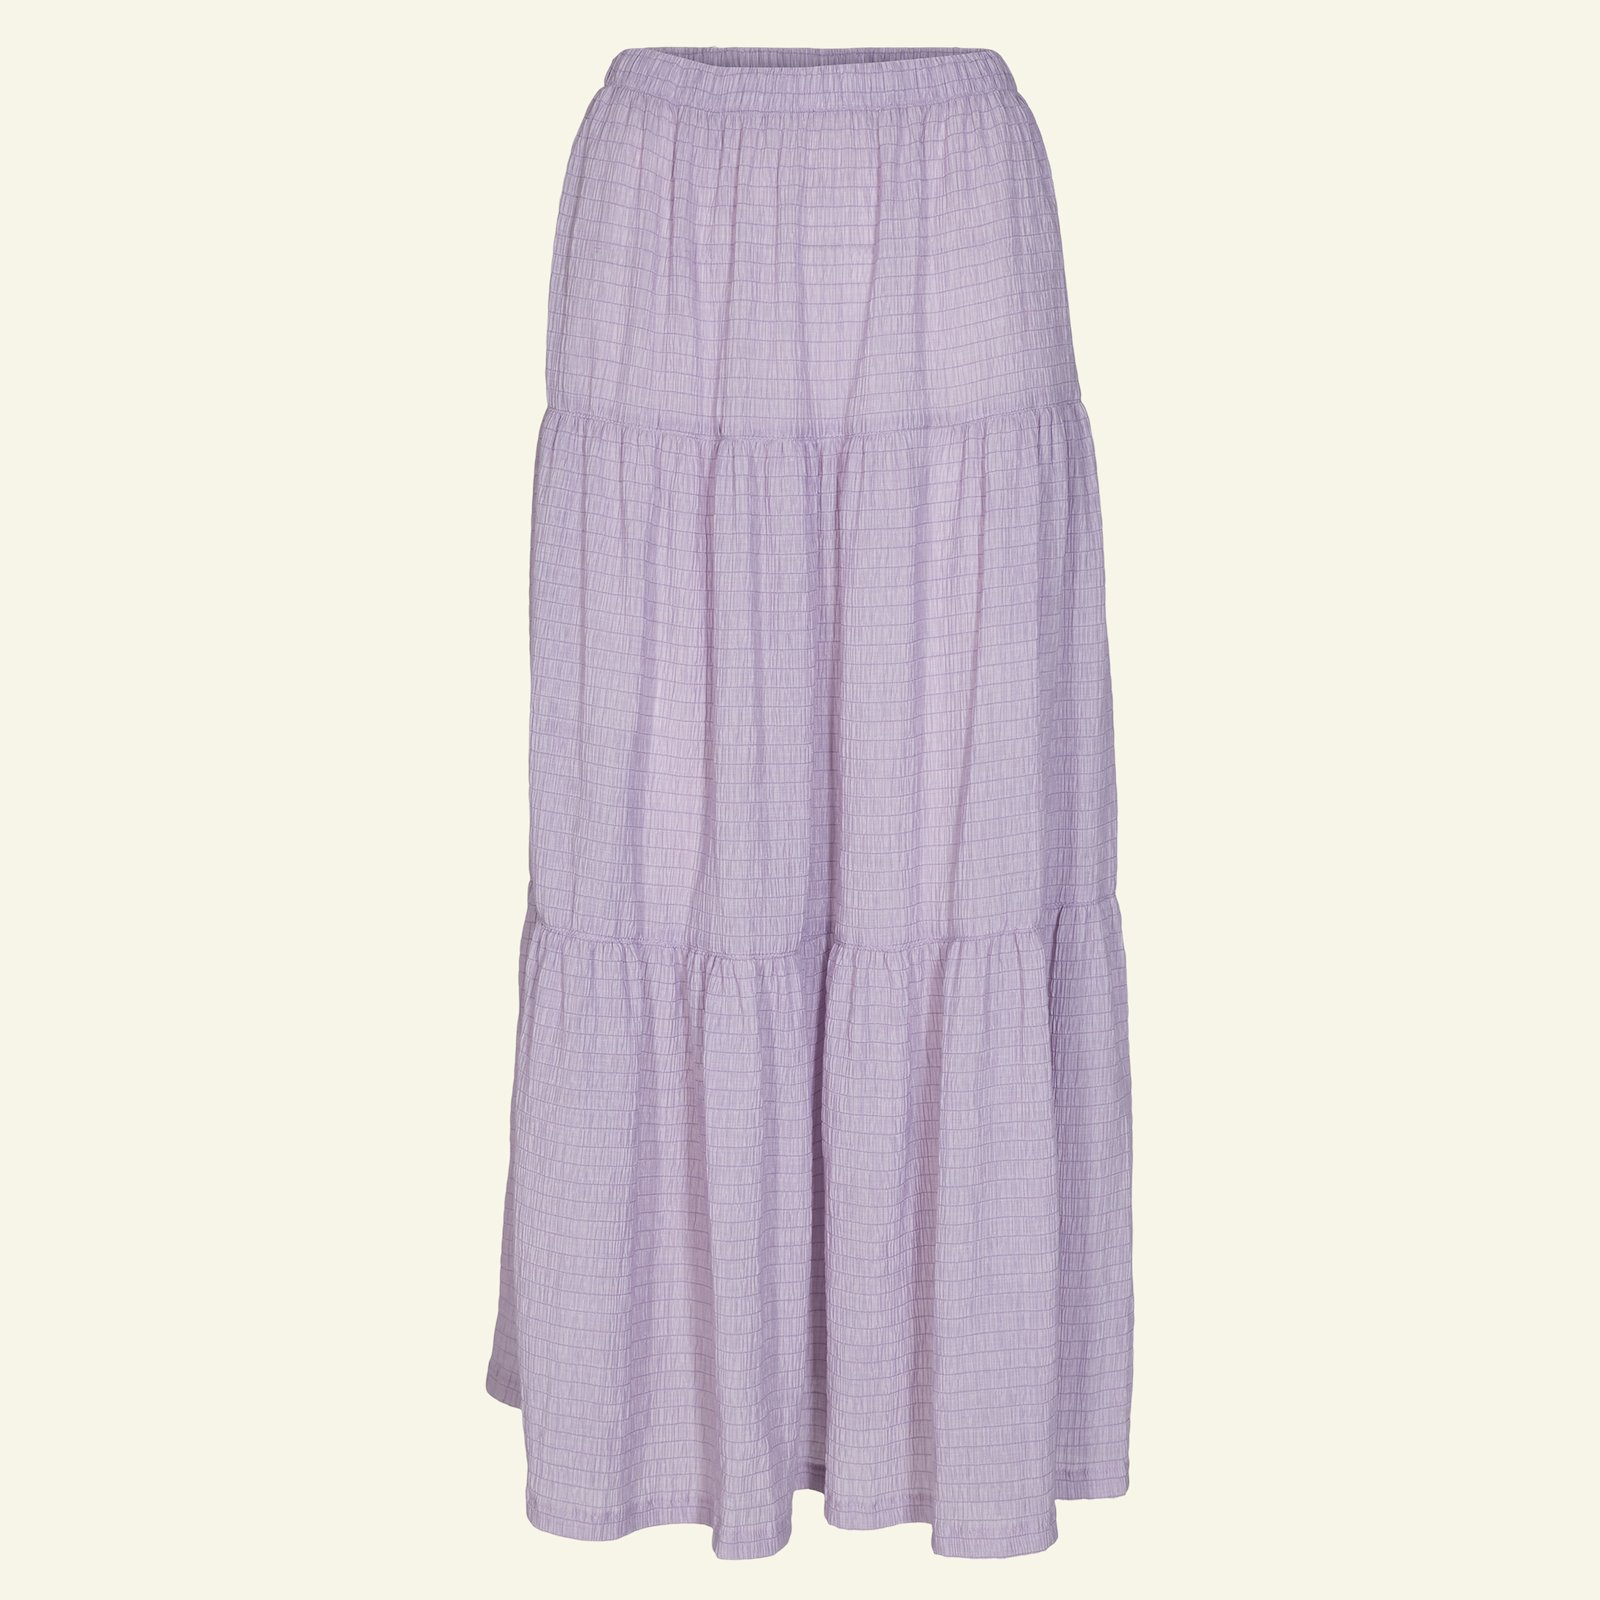 Split level skirt, L p21046_560260_sskit